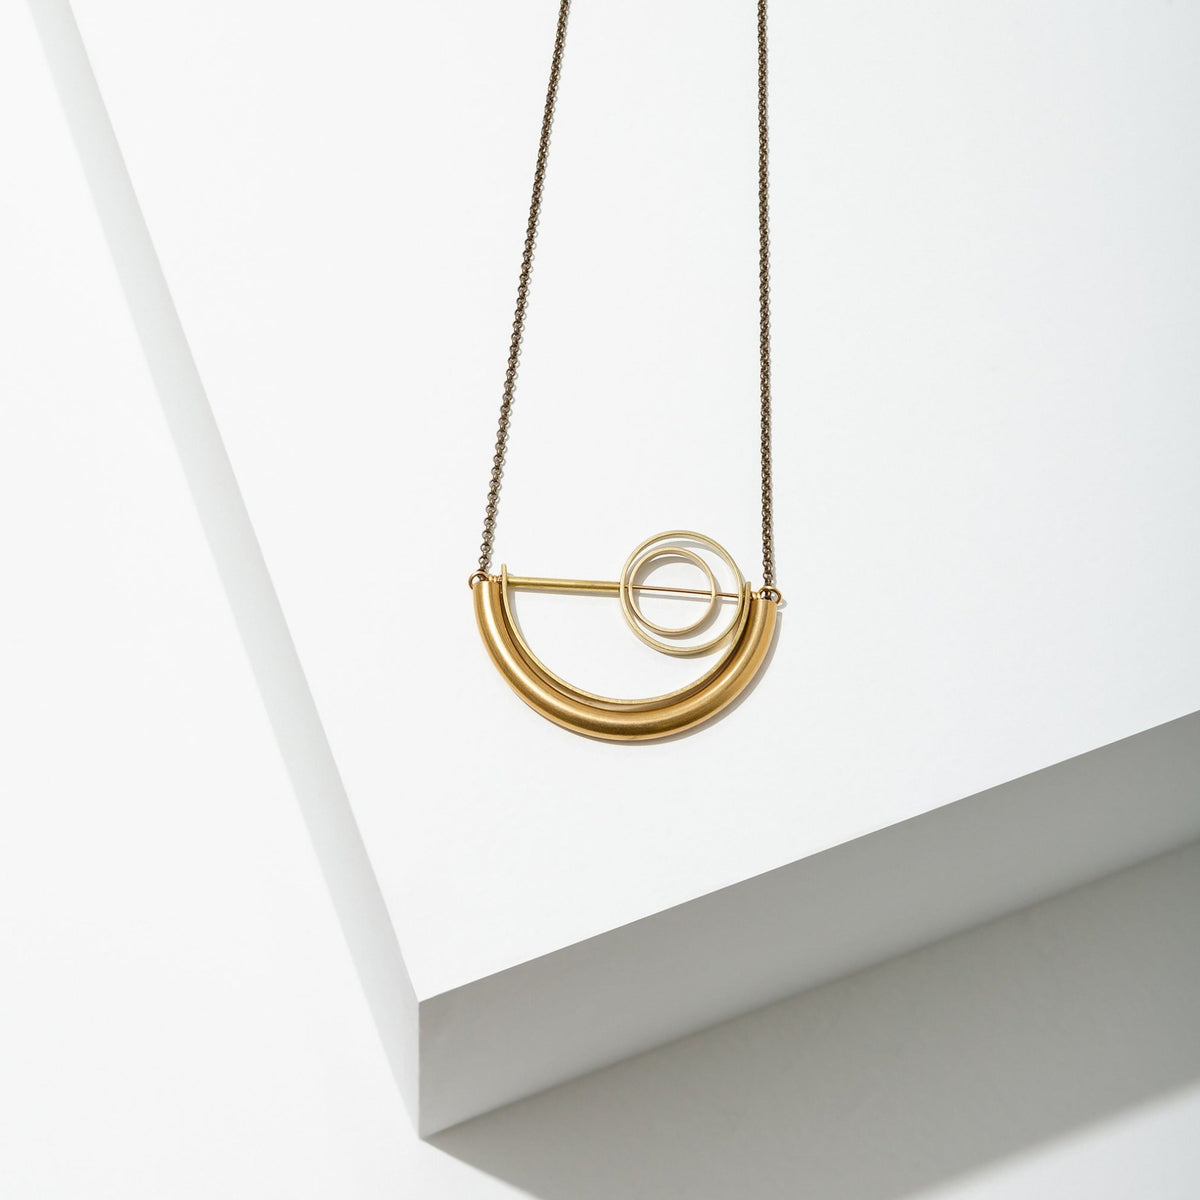 Alden Necklace | Long Gold Half Circle Pendant Necklace | Larissa Loden